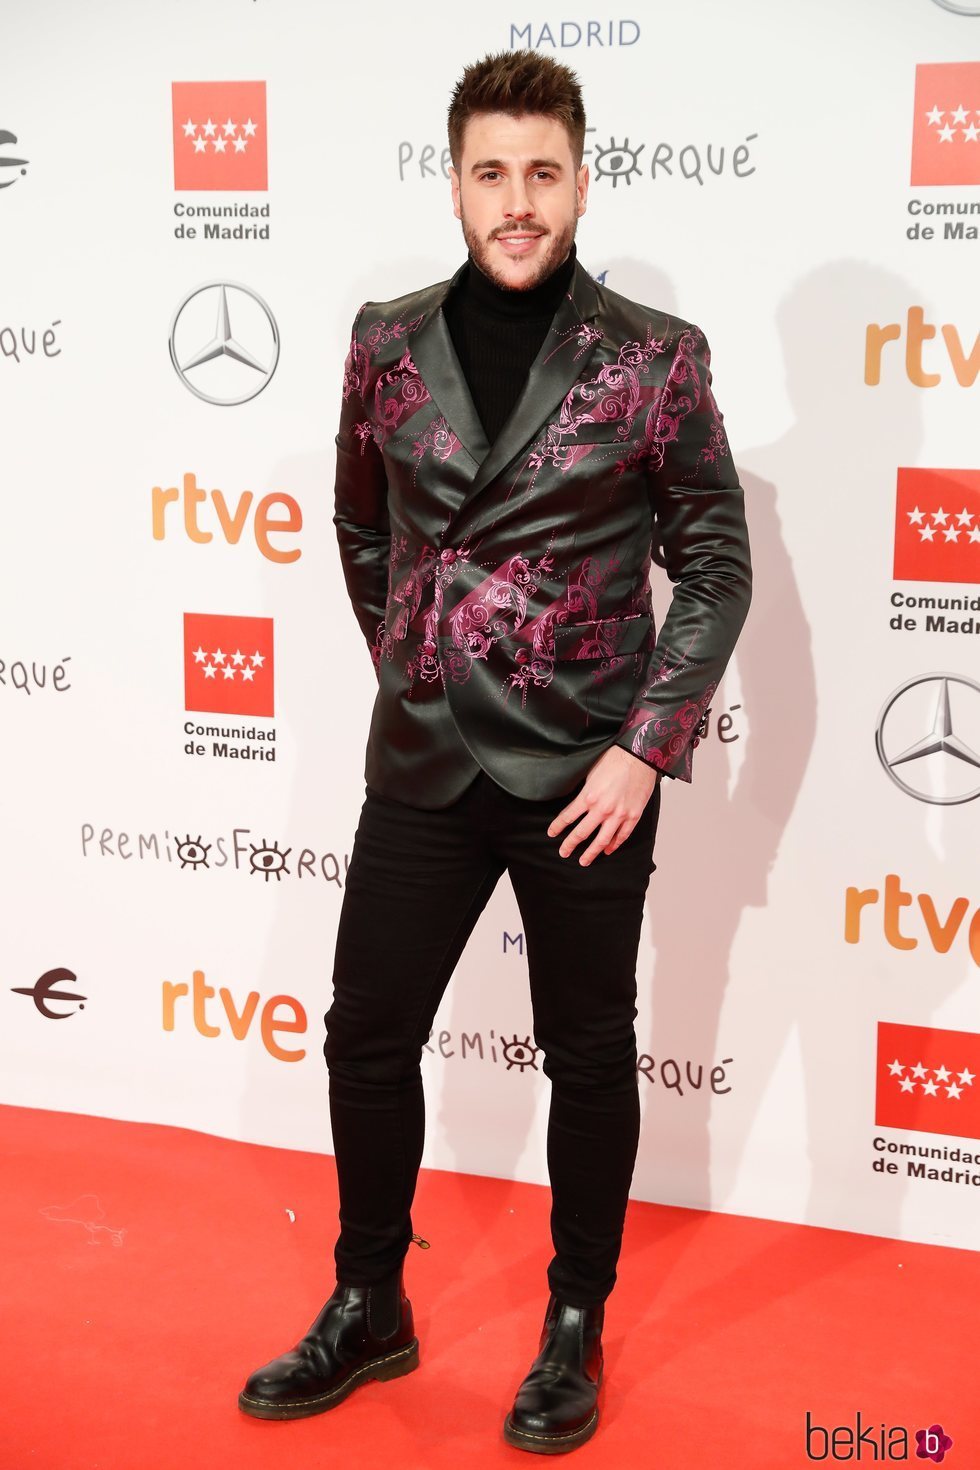 Antonio José en la alfombra roja de los Premios Forqué 2020